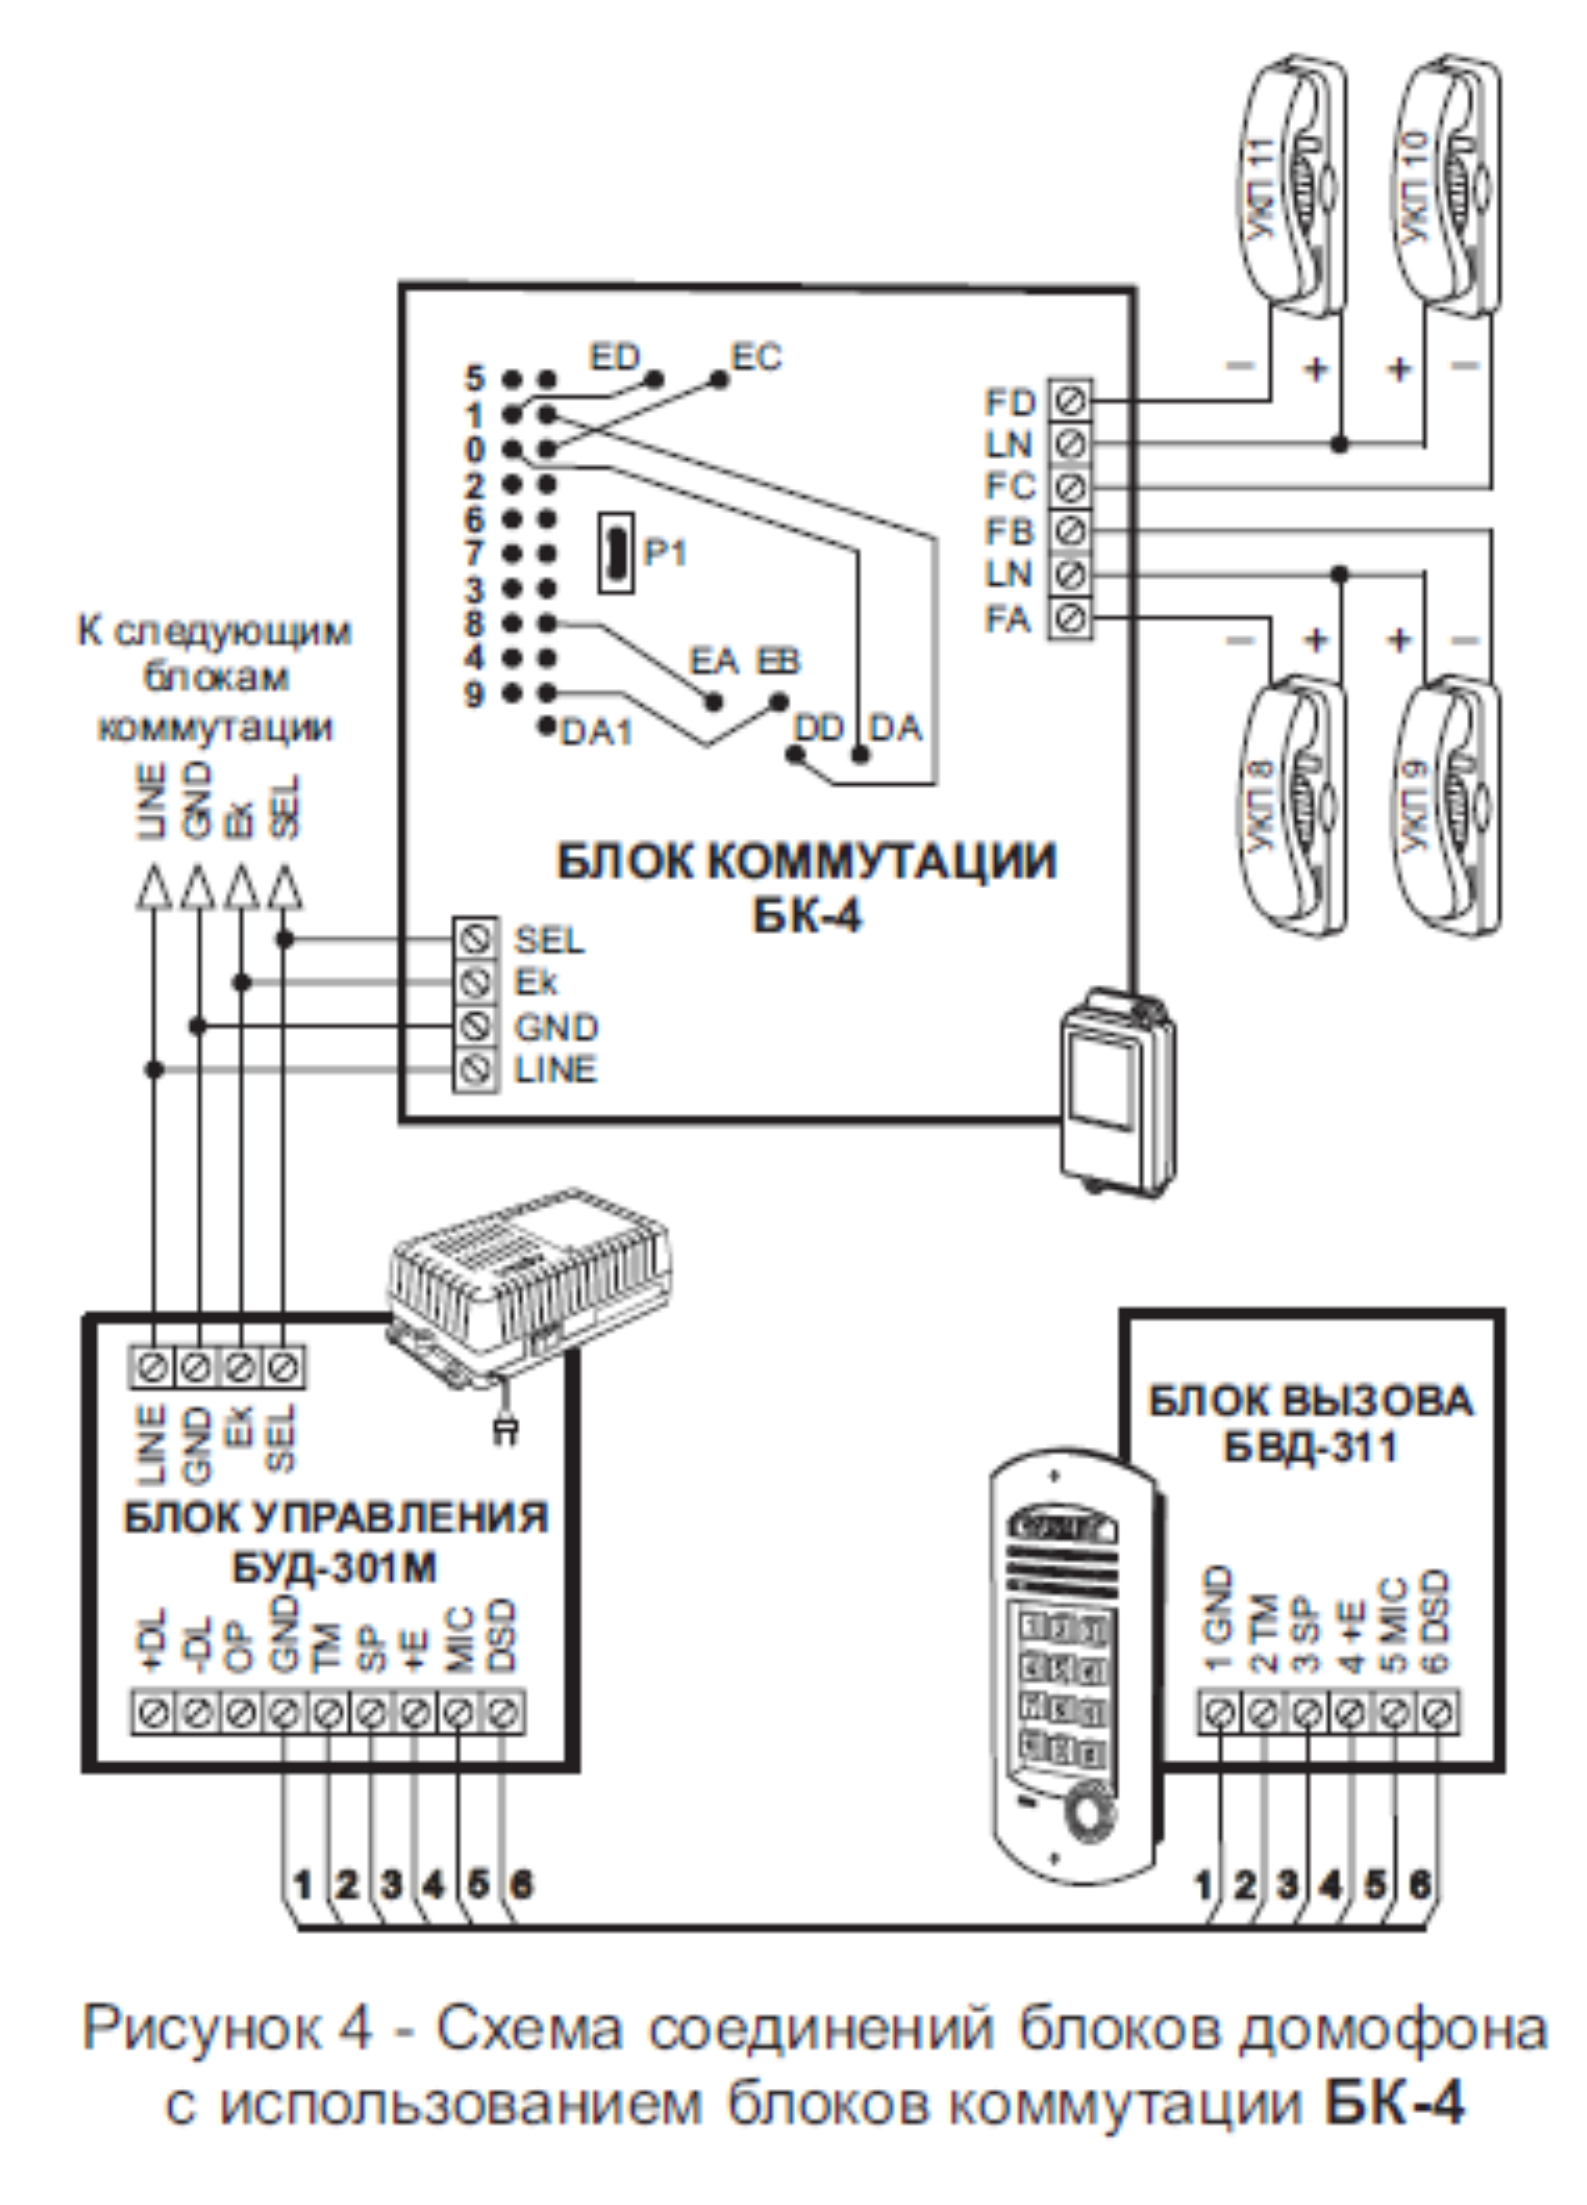 Схема соединений блоков домофона с использованием блоков коммутации БК-4